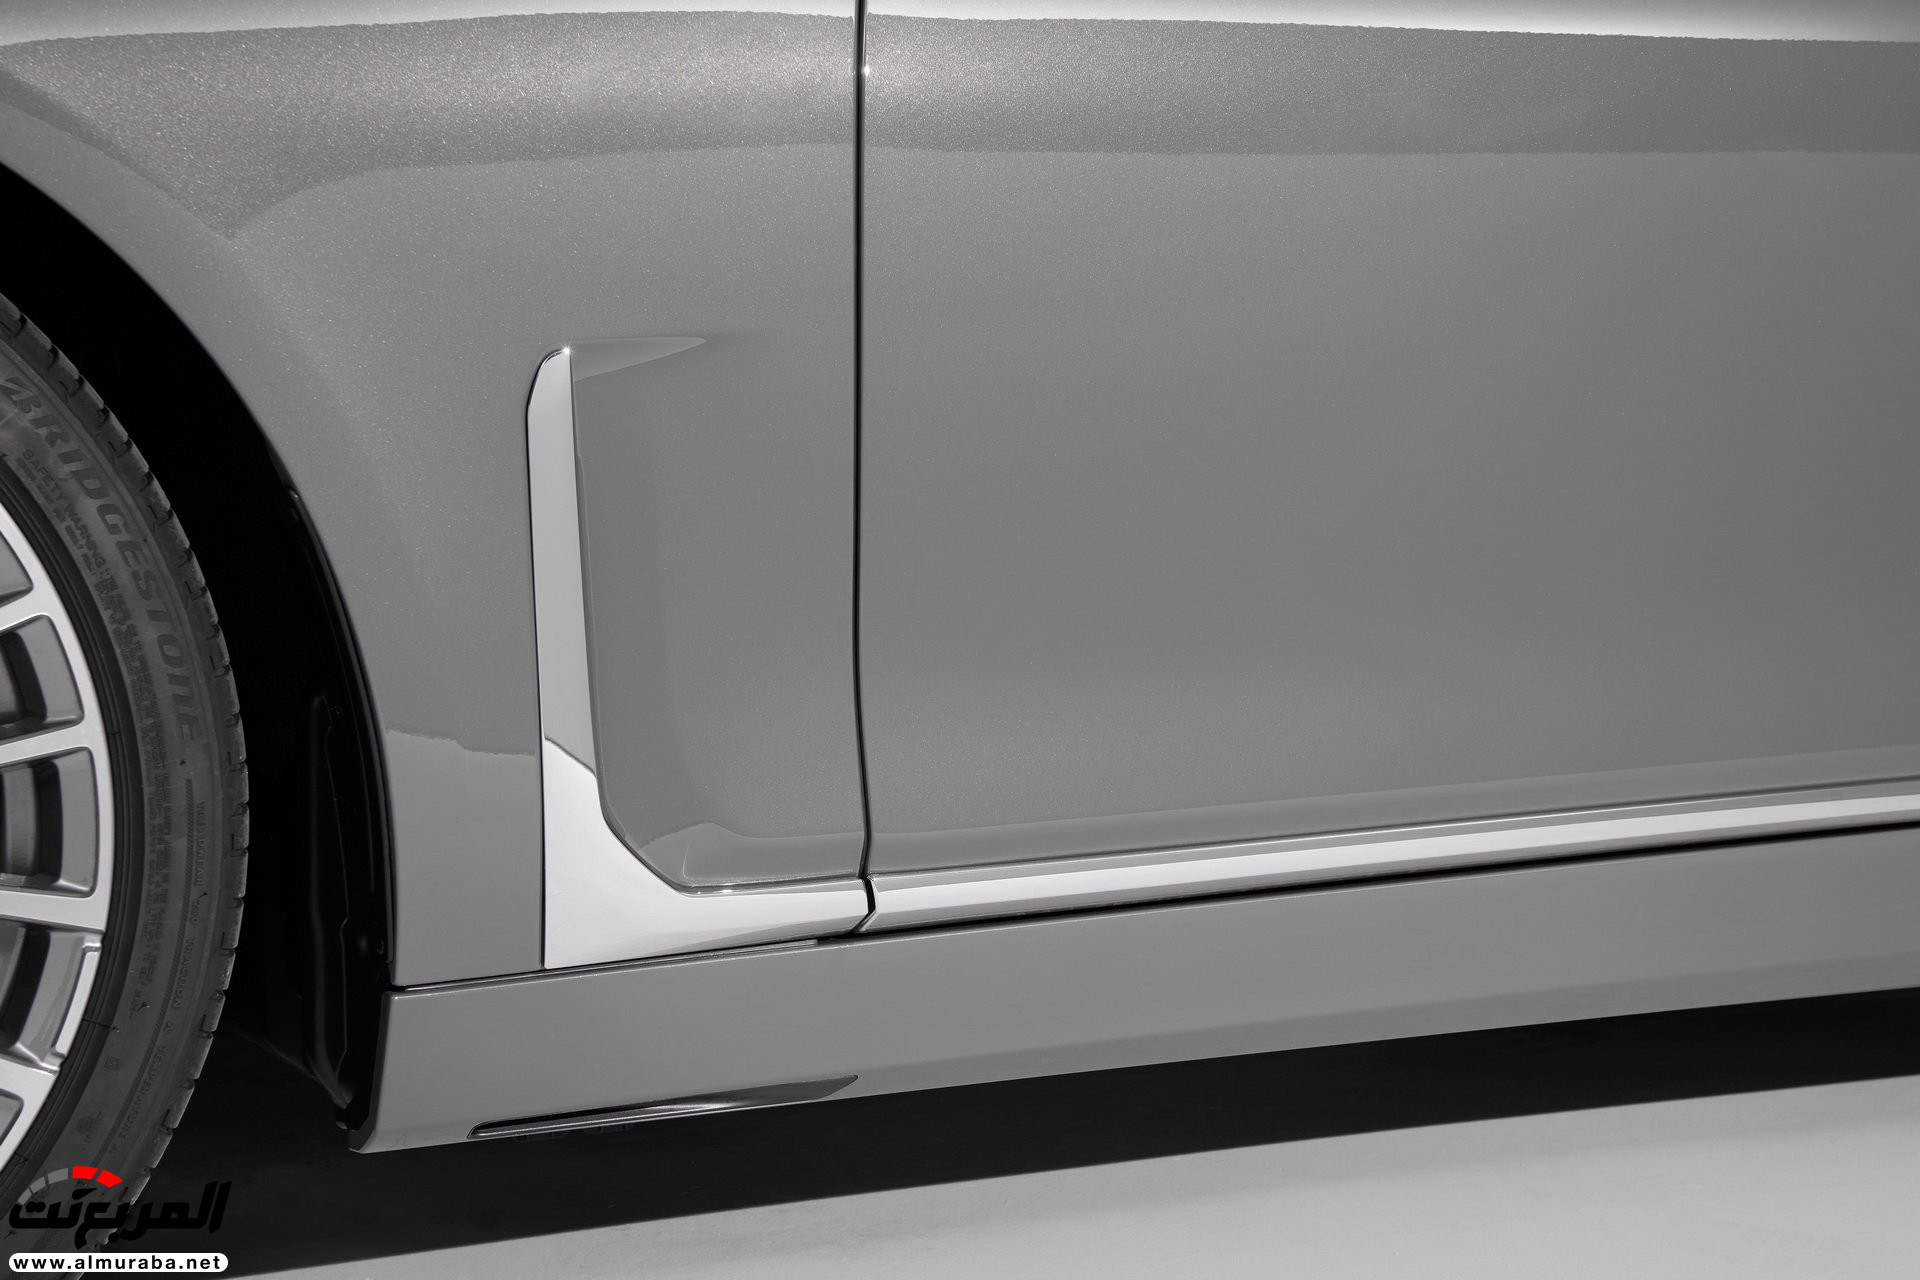 بي ام دبليو الفئة السابعة 2020 المحدثة تكشف نفسها رسمياً "صور ومواصفات" BMW 7 Series 72